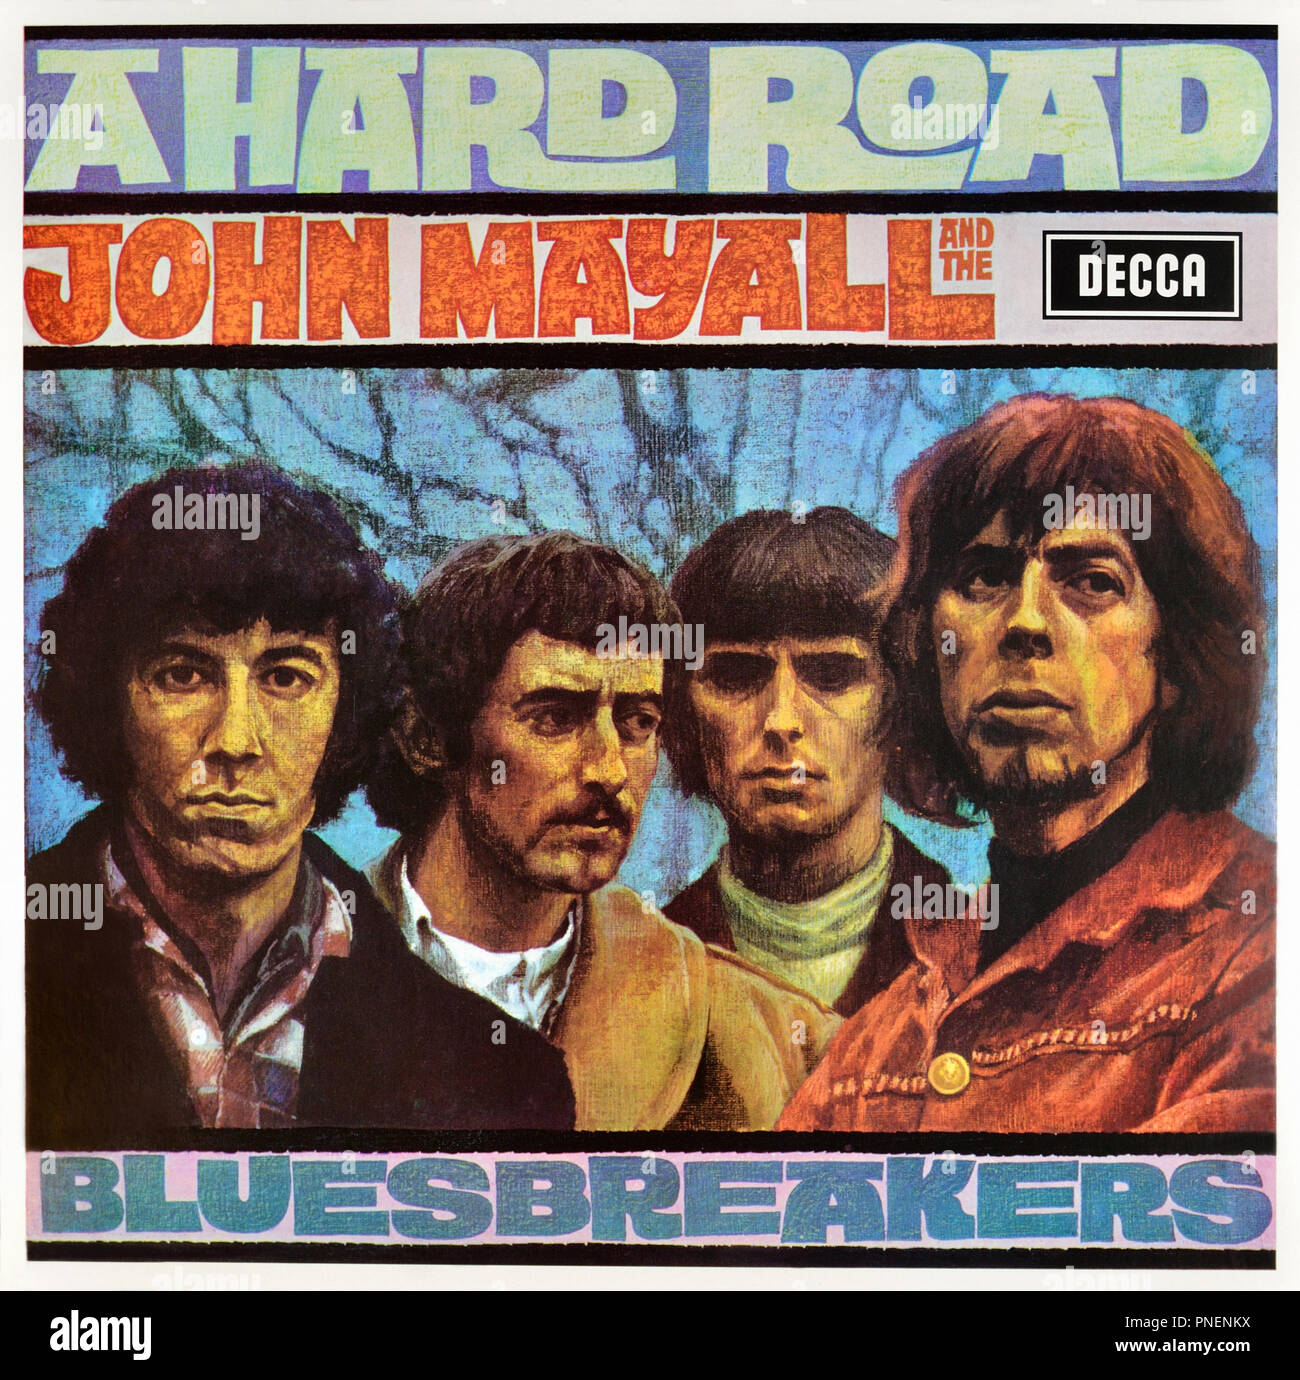 John Mayall and the Bluesbreakers - copertina originale dell'album in vinile - A hard Road - 1967 Foto Stock